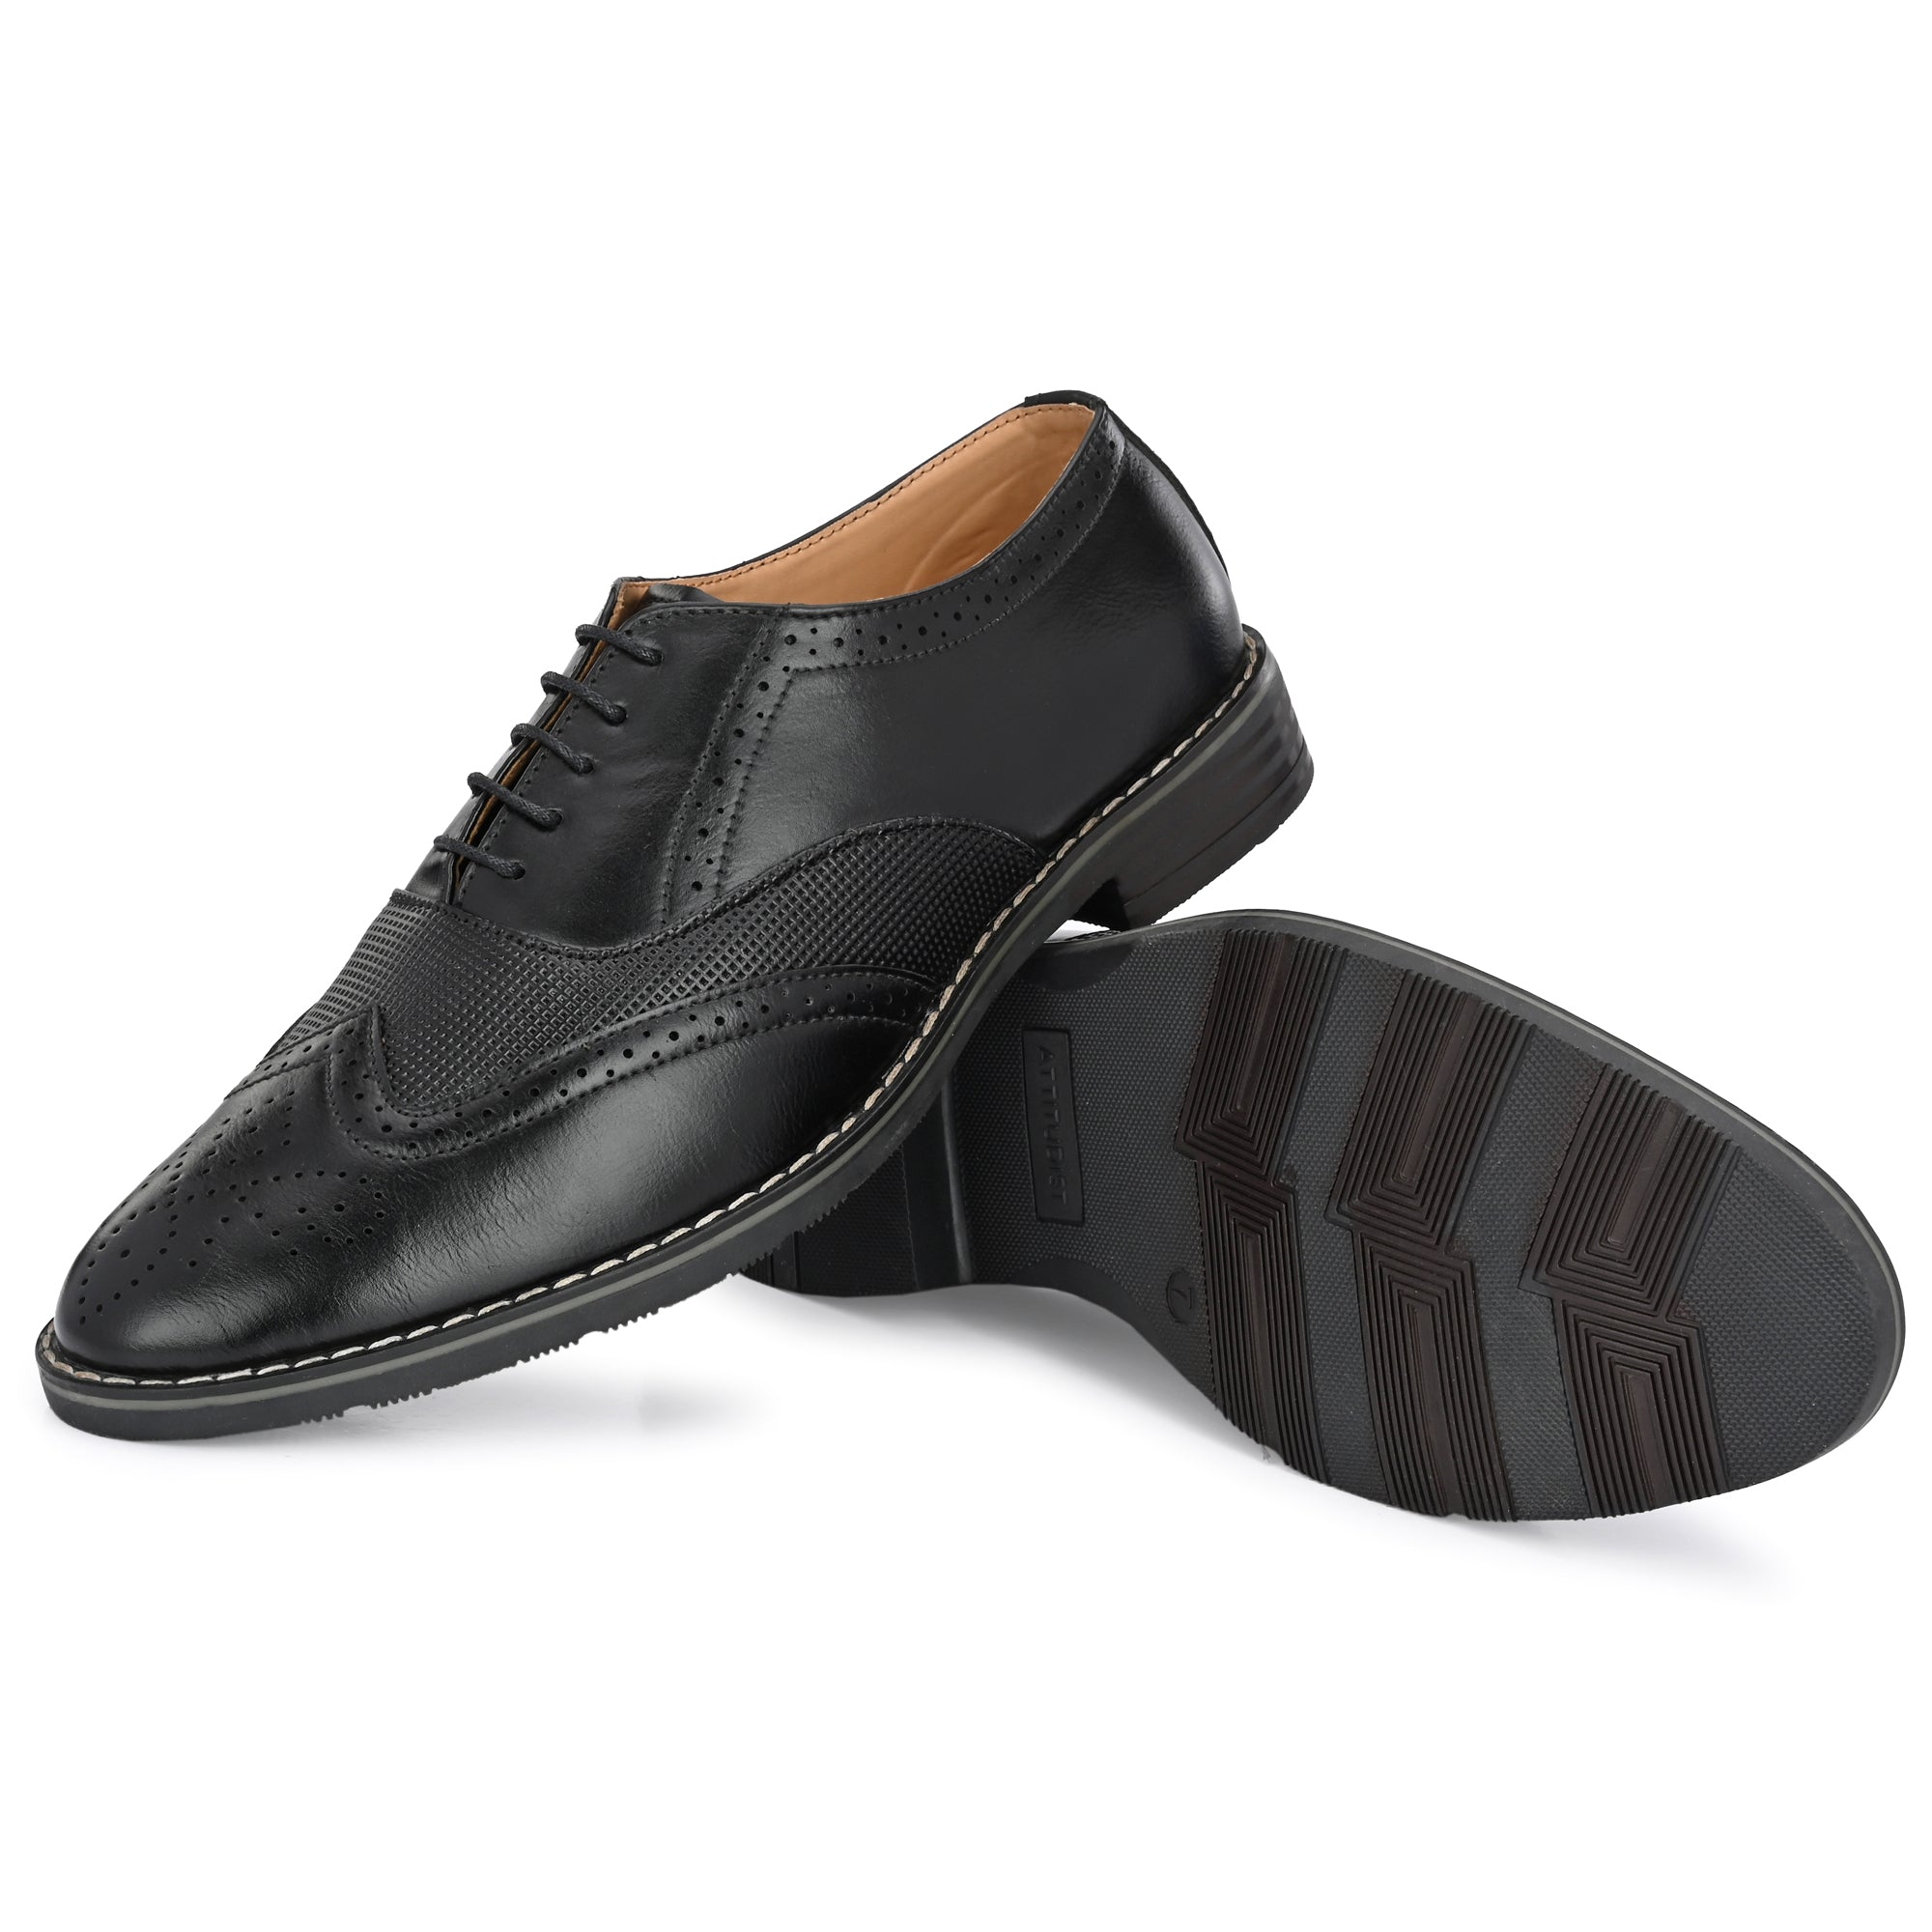 black-formal-lace-up-attitudist-shoes-for-men-sp9a